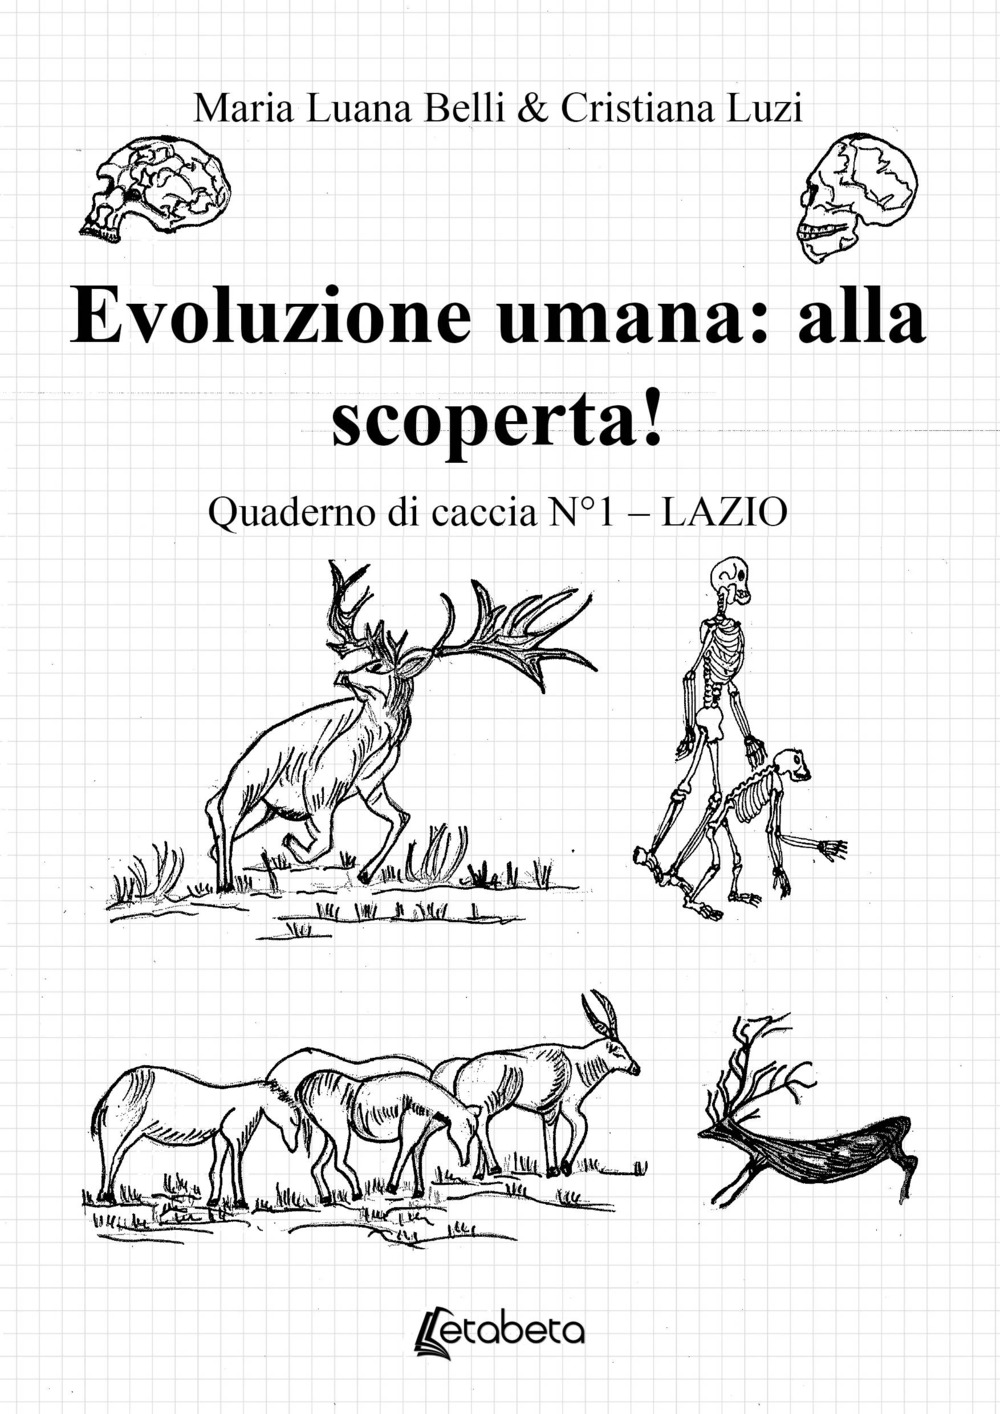 Evoluzione umana: alla scoperta! Quaderno di caccia. Vol. 1: Lazio